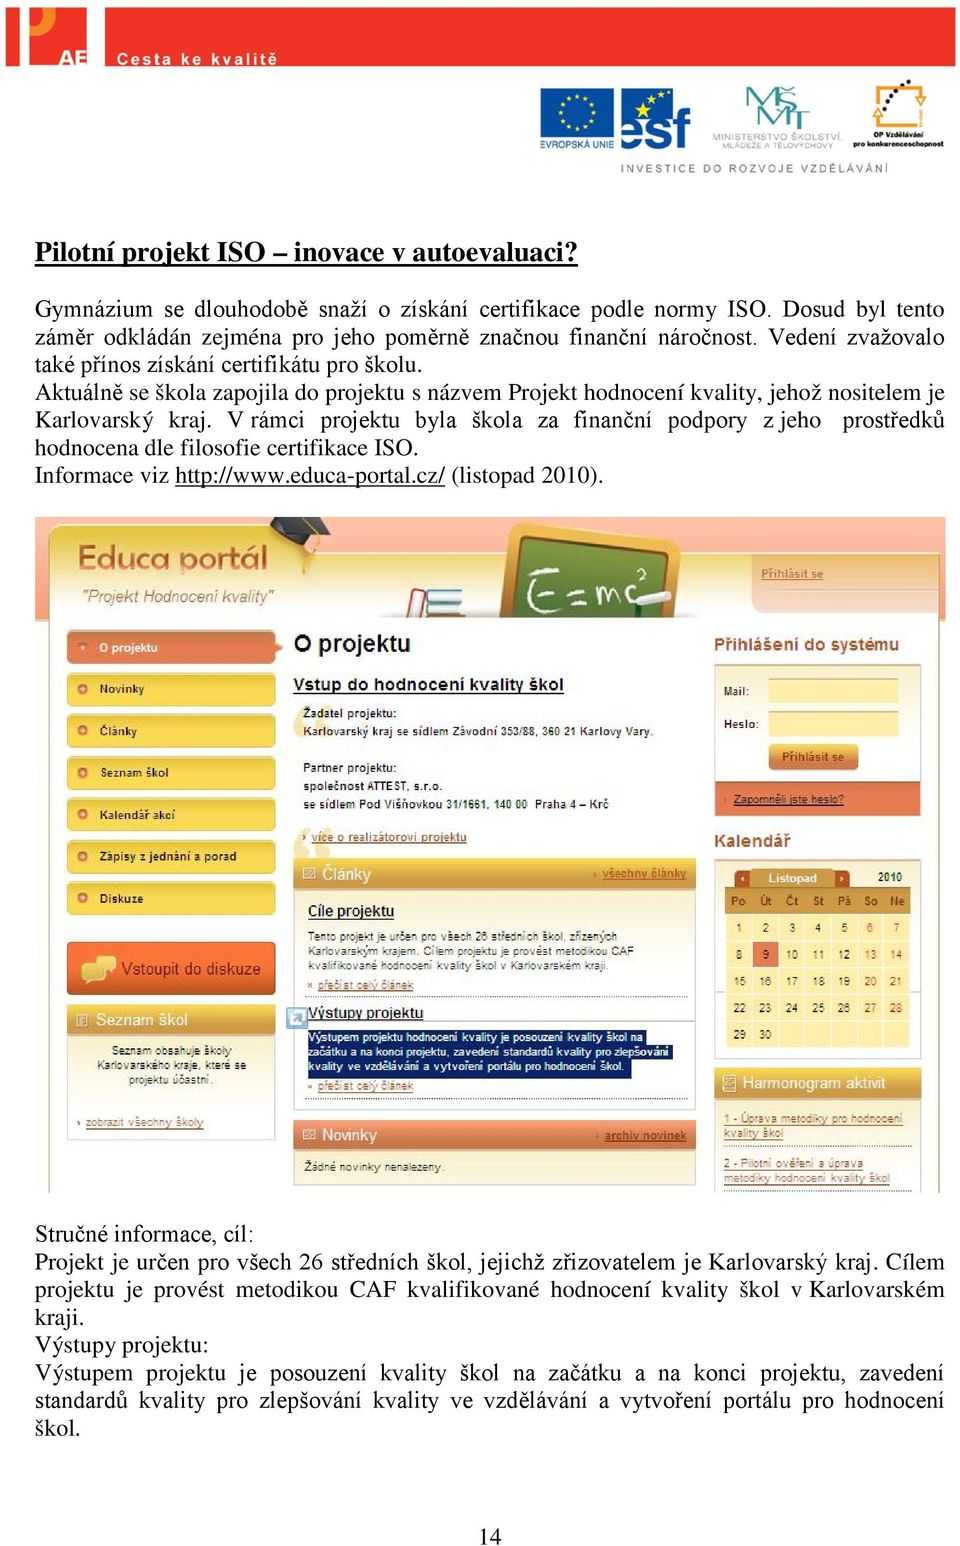 V rámci projektu byla škola za finanční podpory z jeho prostředků hodnocena dle filosofie certifikace ISO. Informace viz http://www.educa-portal.cz/ (listopad 2010).